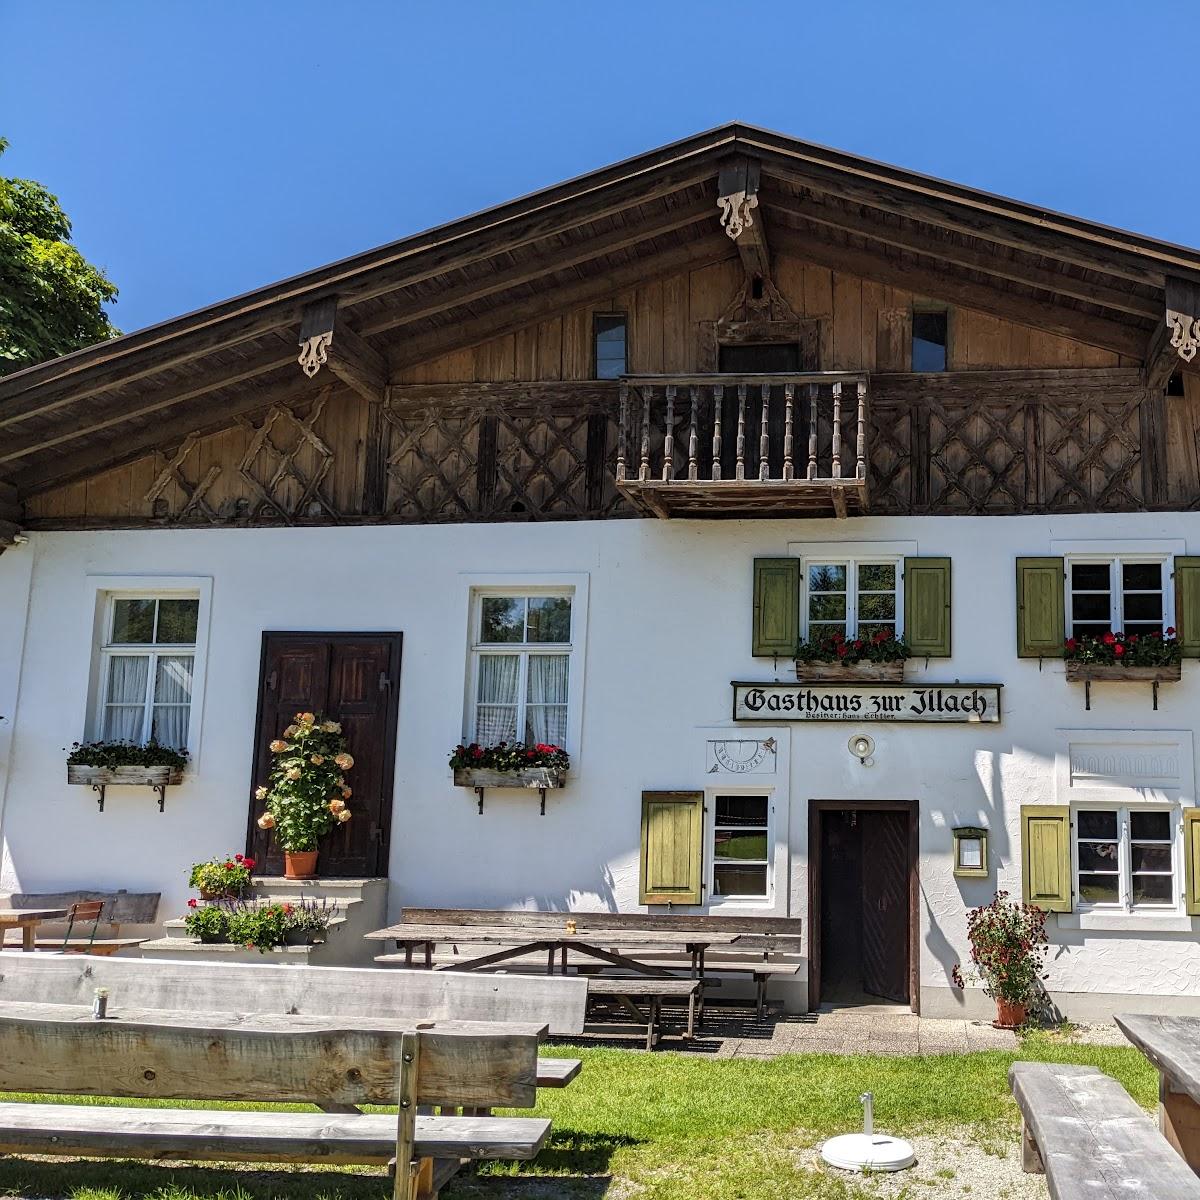 Restaurant "Gasthaus zur Illach" in Steingaden